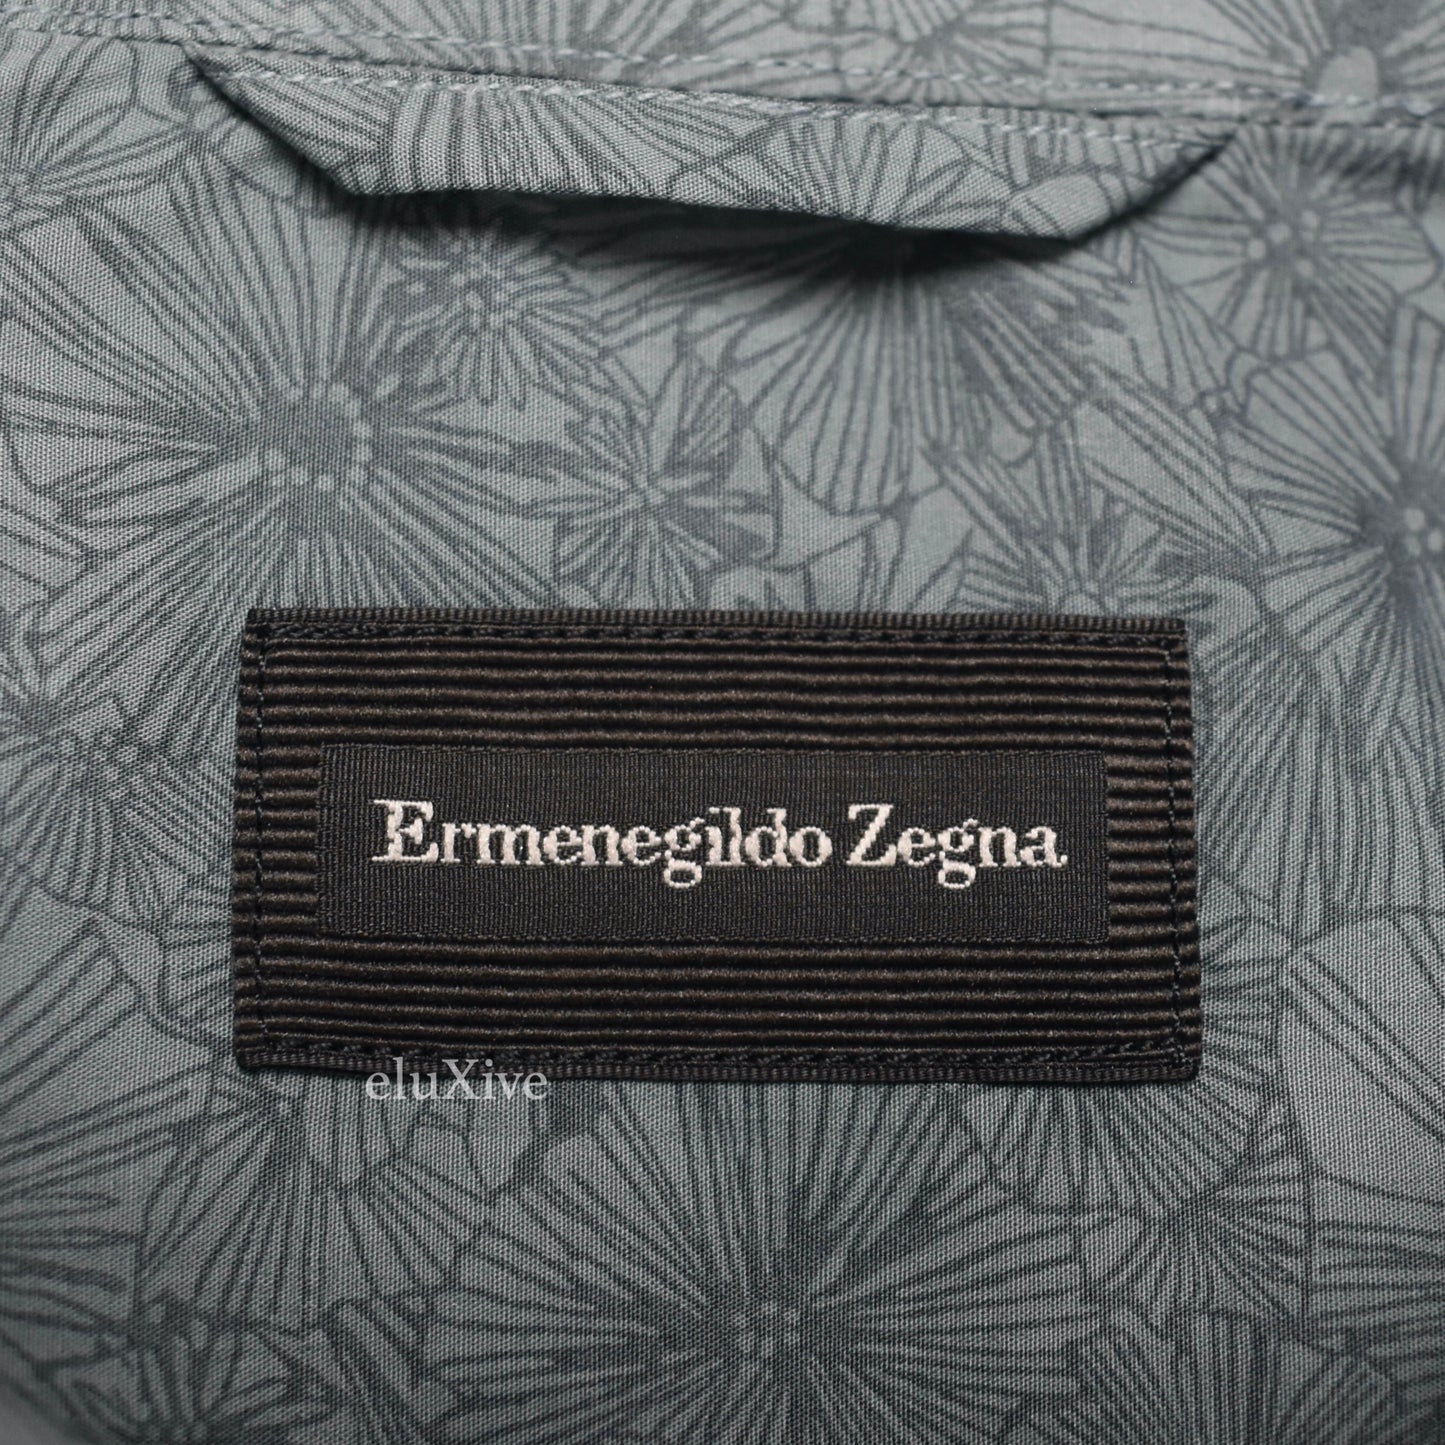 Ermenegildo Zegna - Slate Floral Print Button Down Shirt